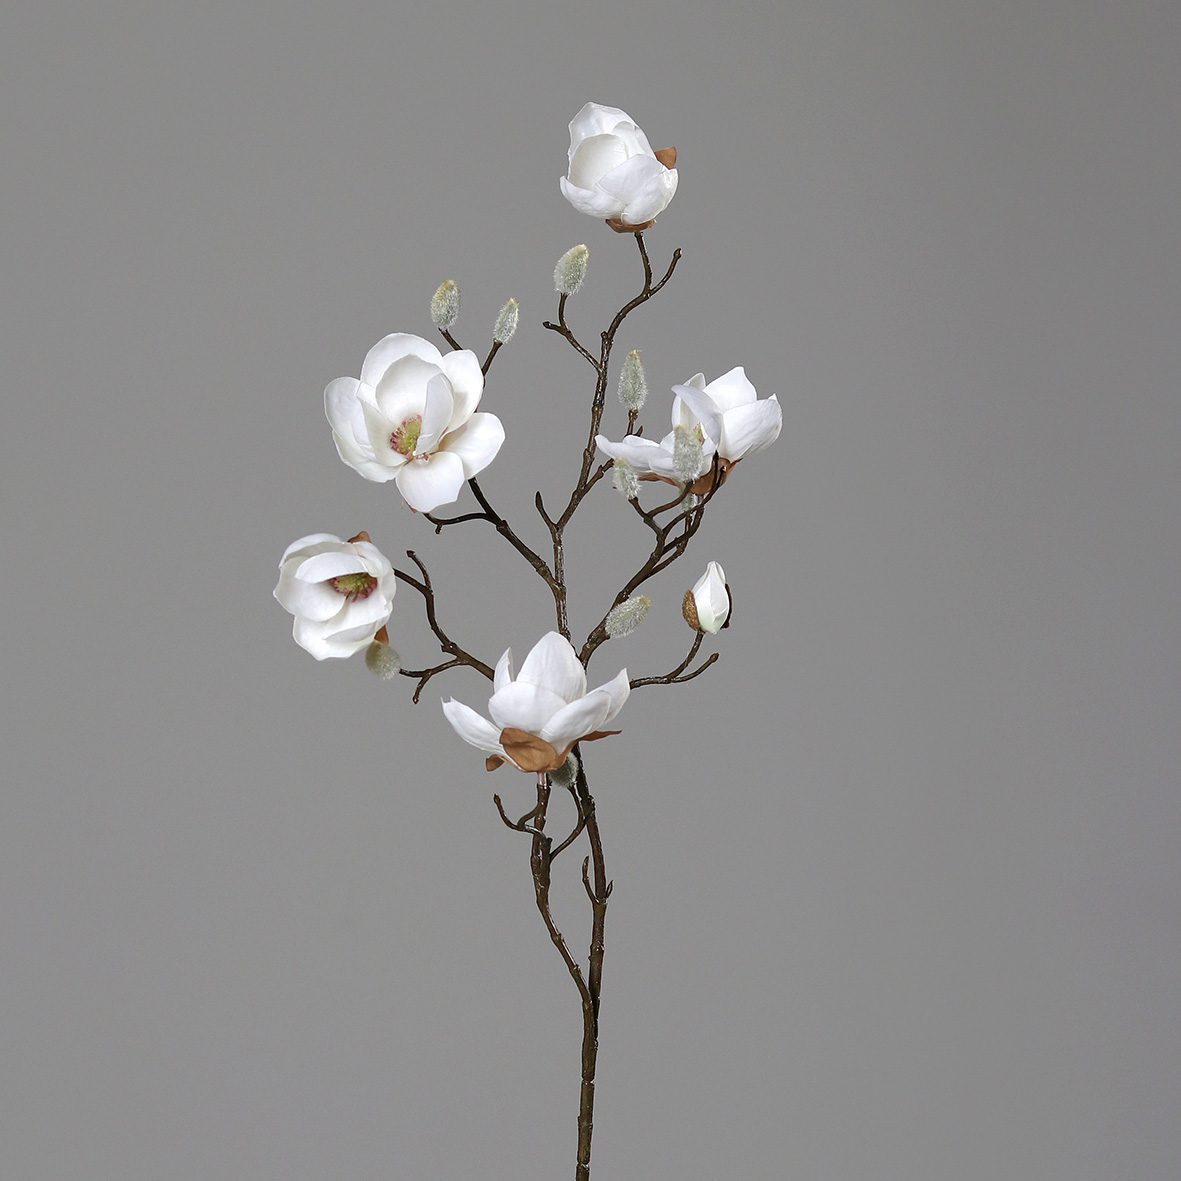 Magnolienzweig 80cm weiß-creme DP Kunstblumen künstliche Blumen Magnolie Magnolia